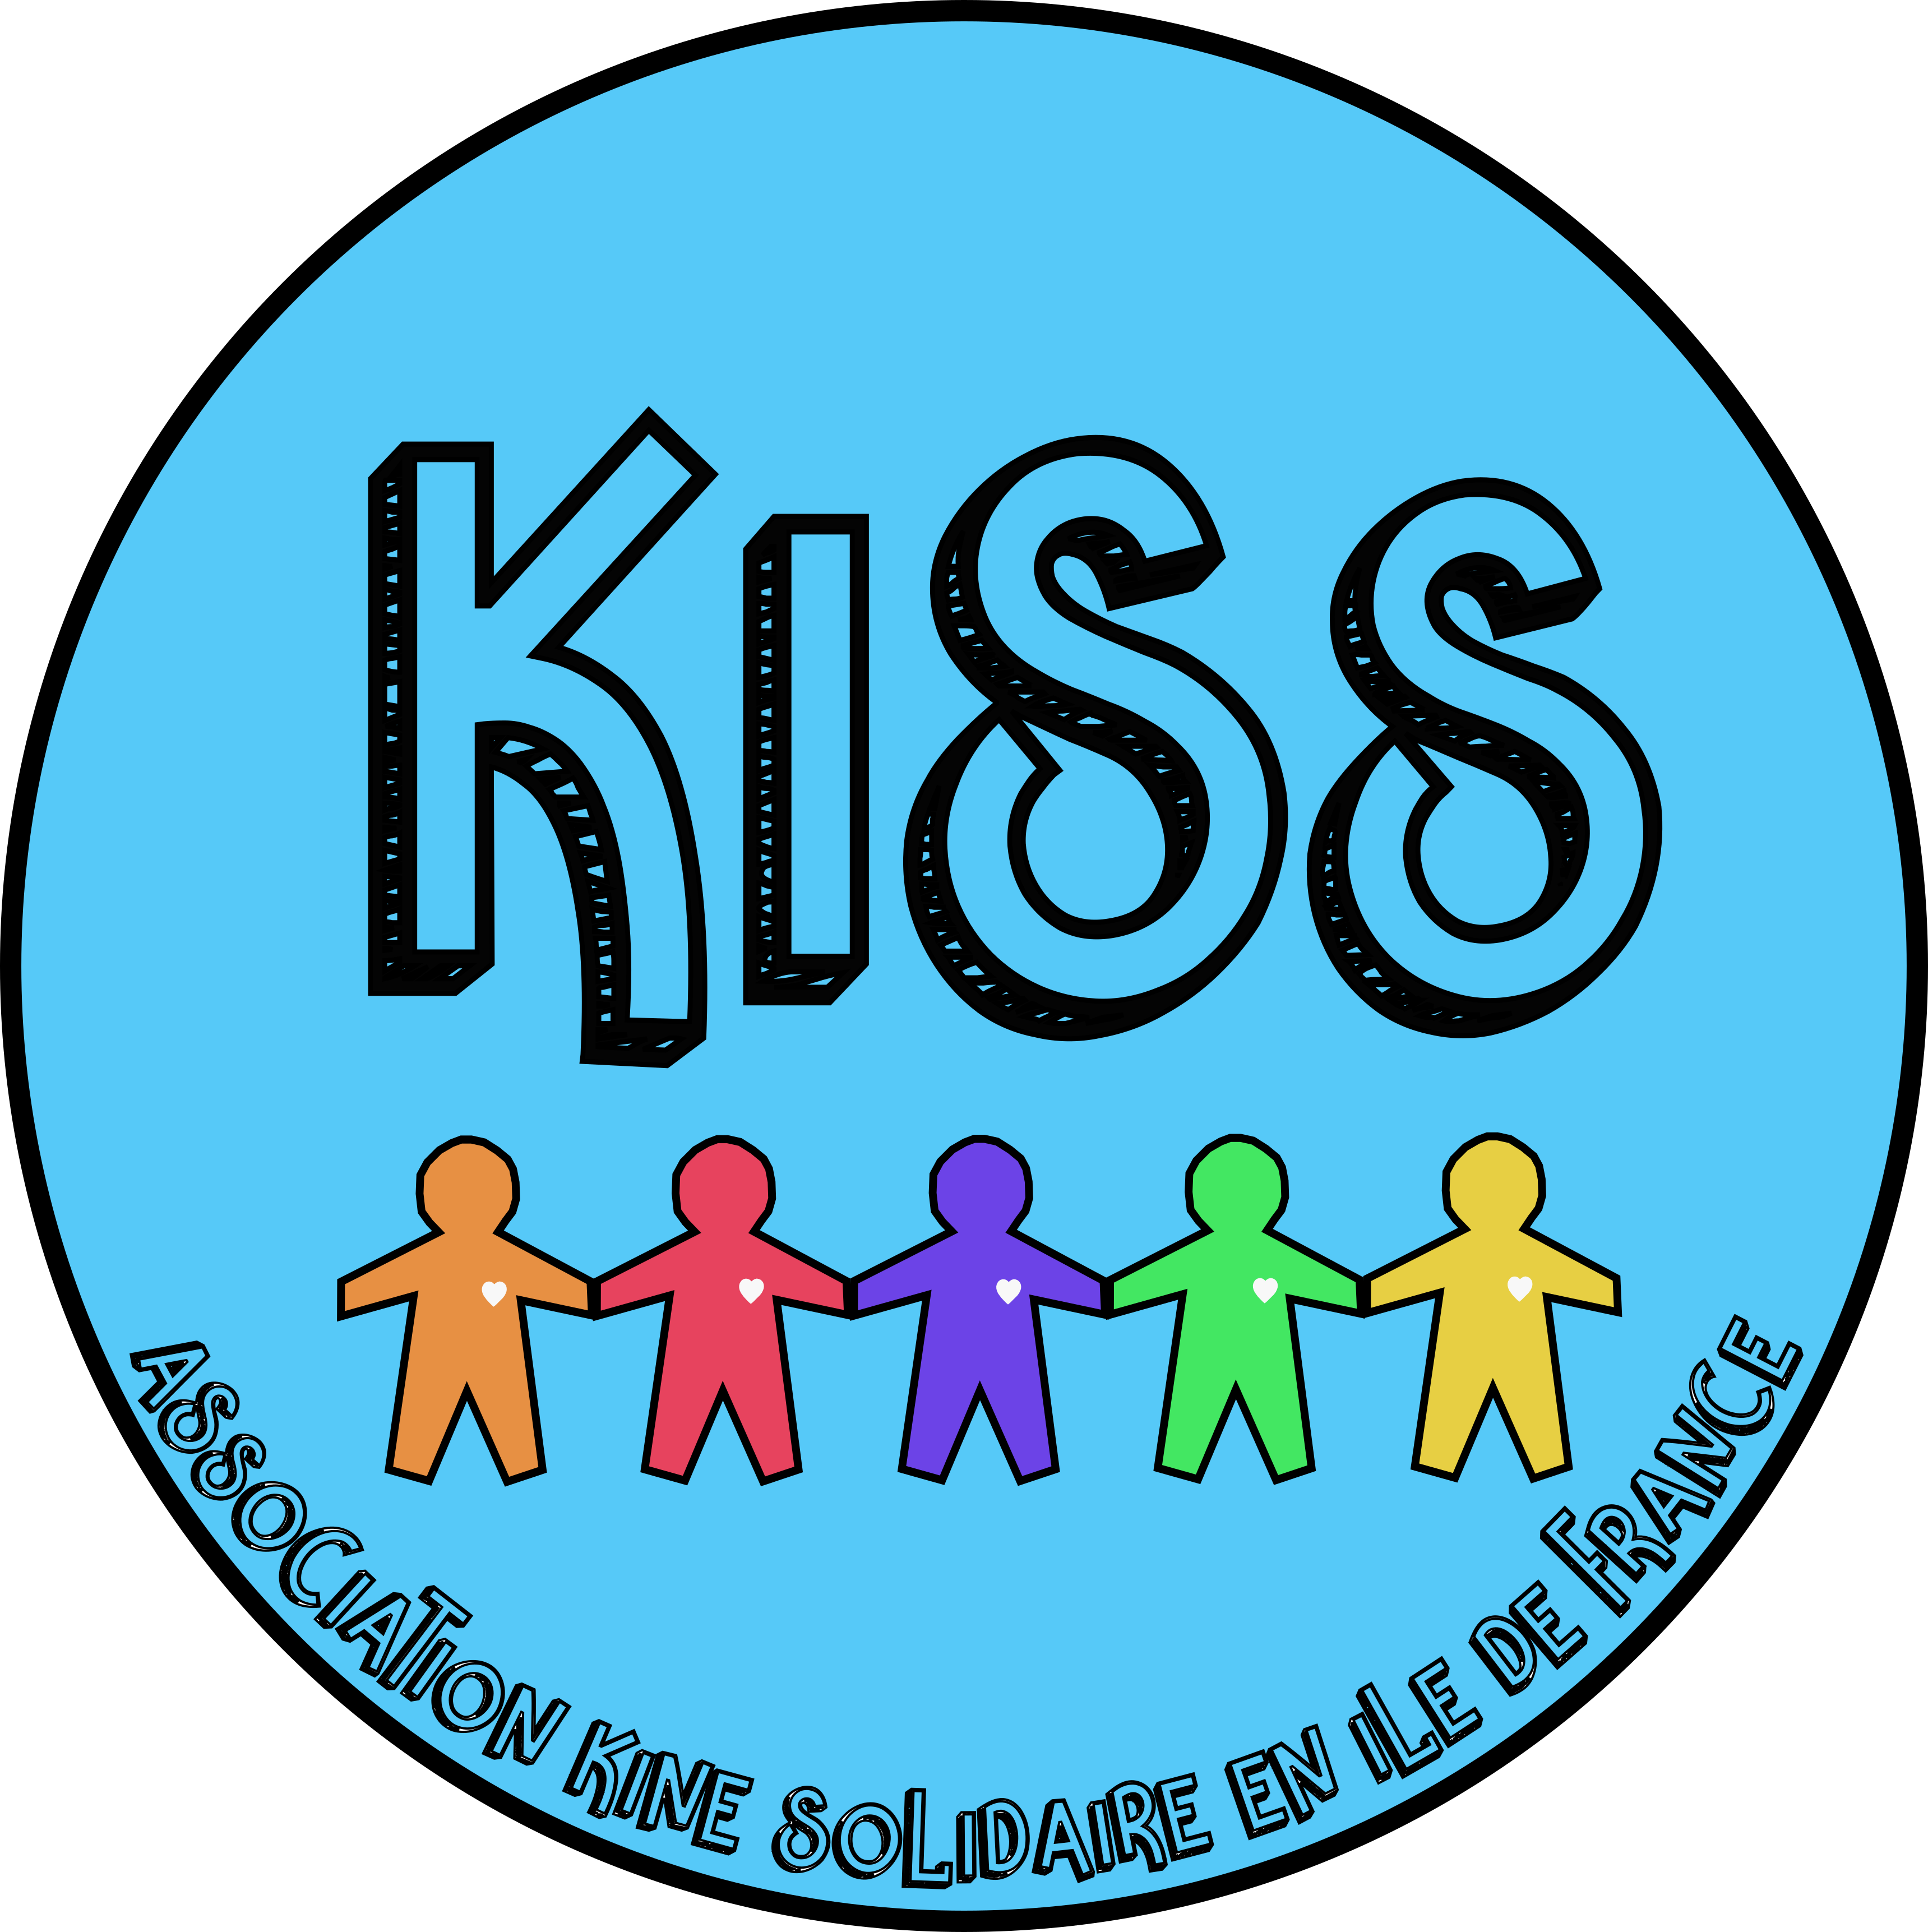 Logo KISS